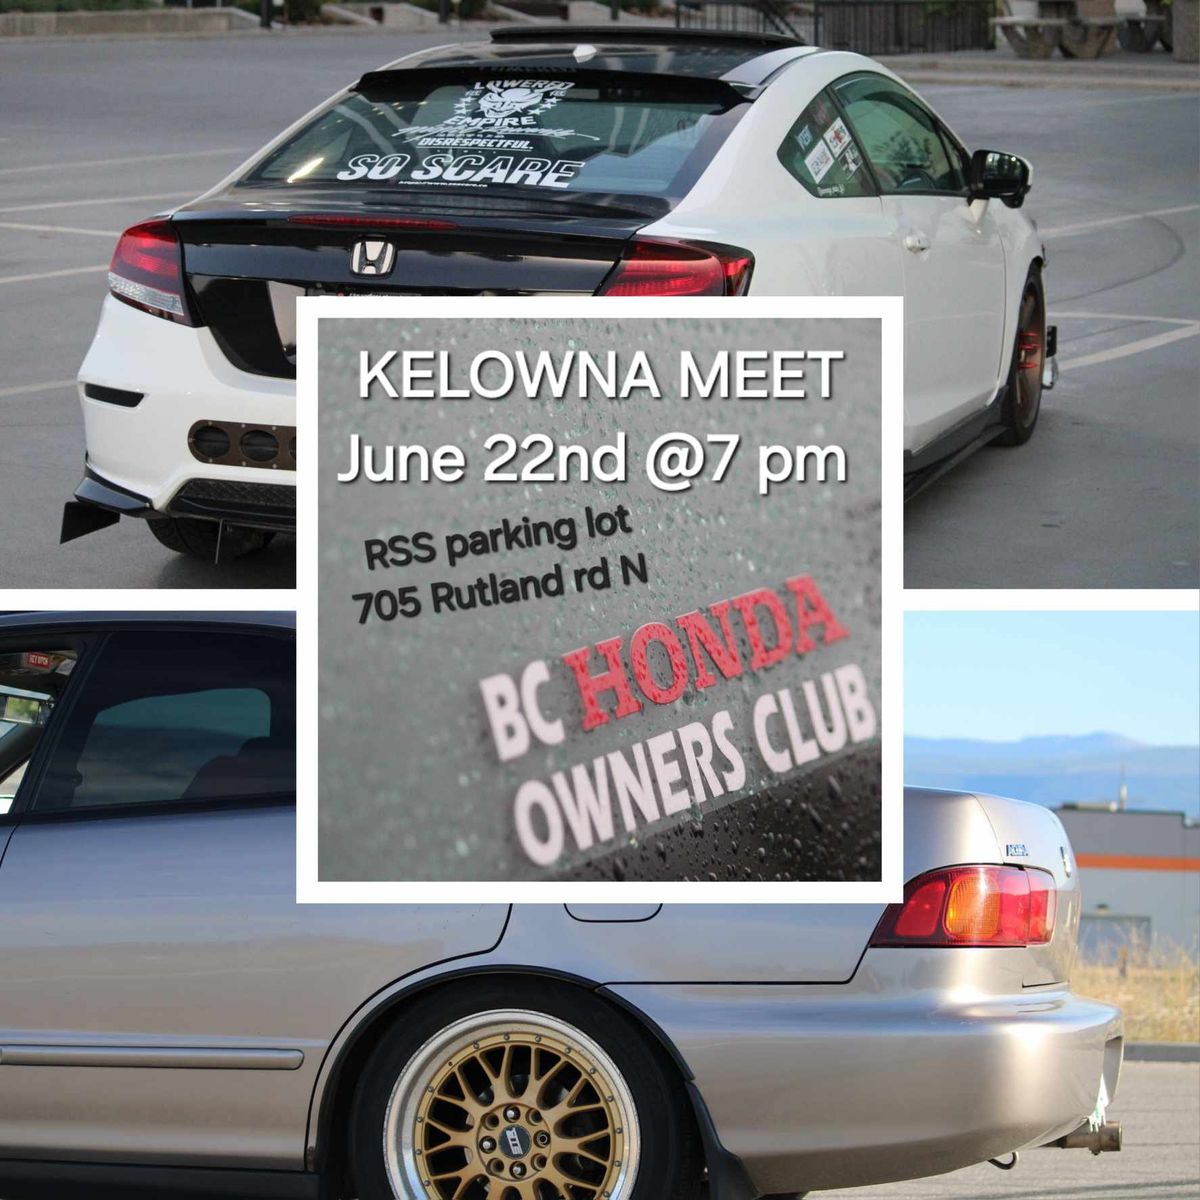 BC Honda Meet Kelowna! 